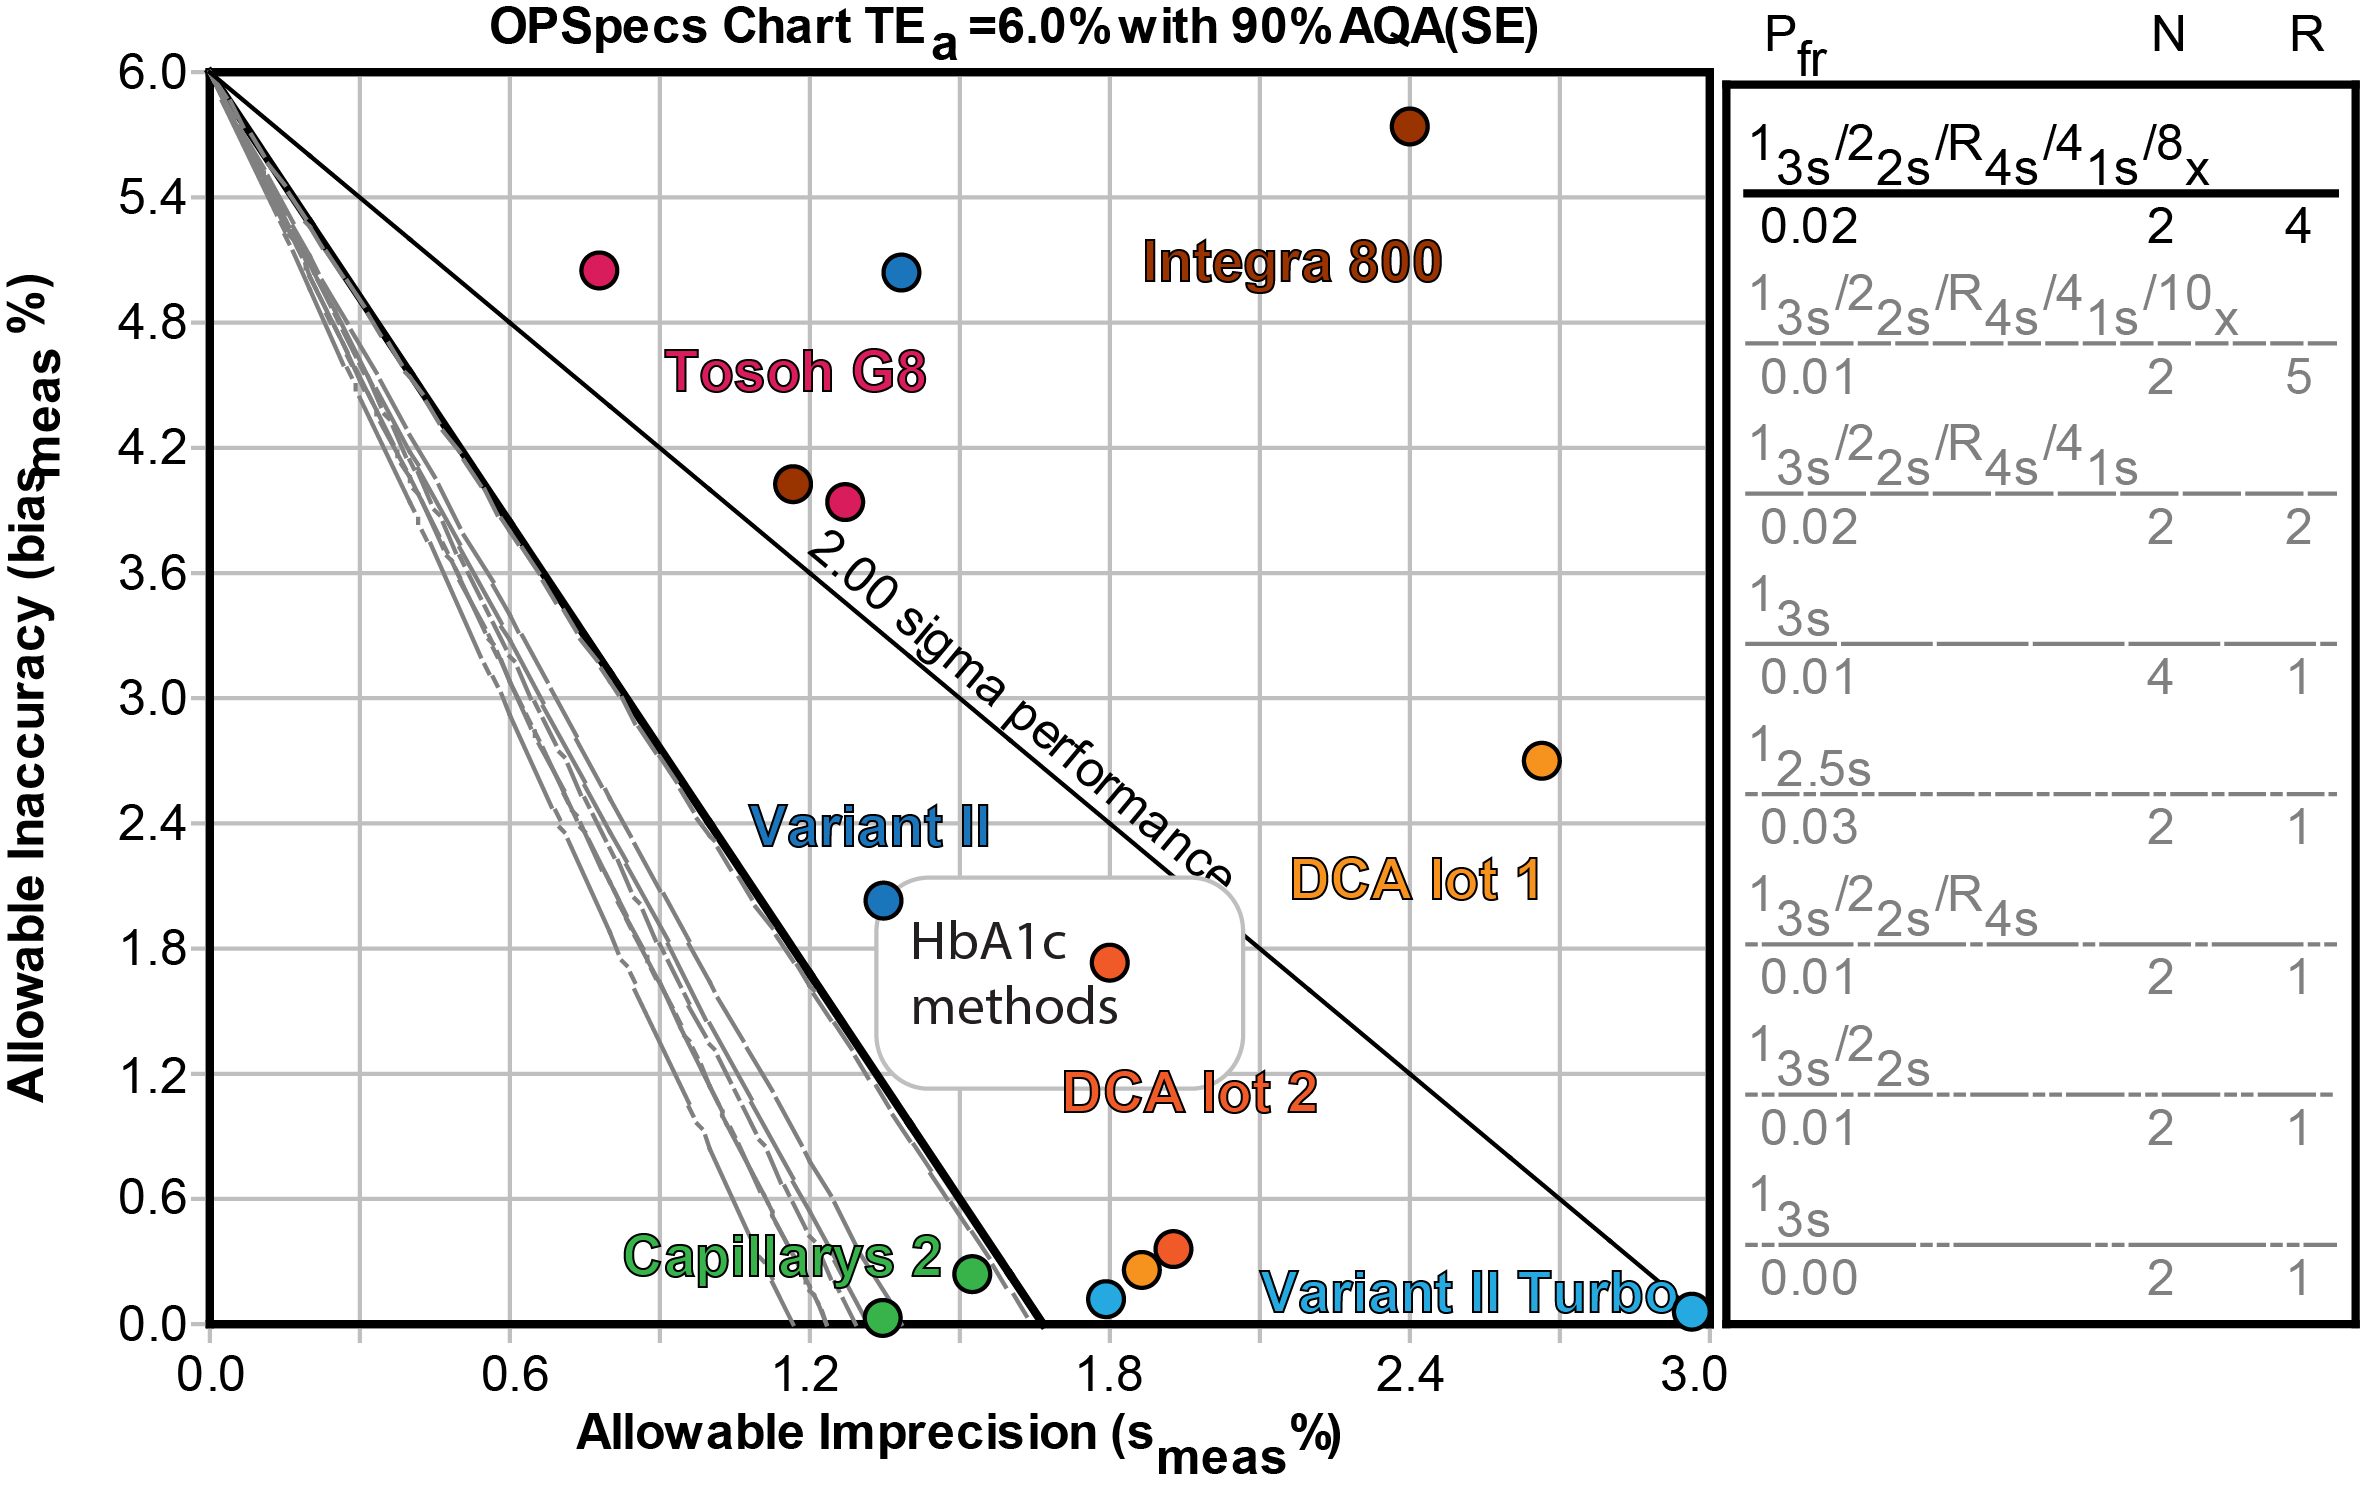 2014-6 HbA1c methods OPSpecs